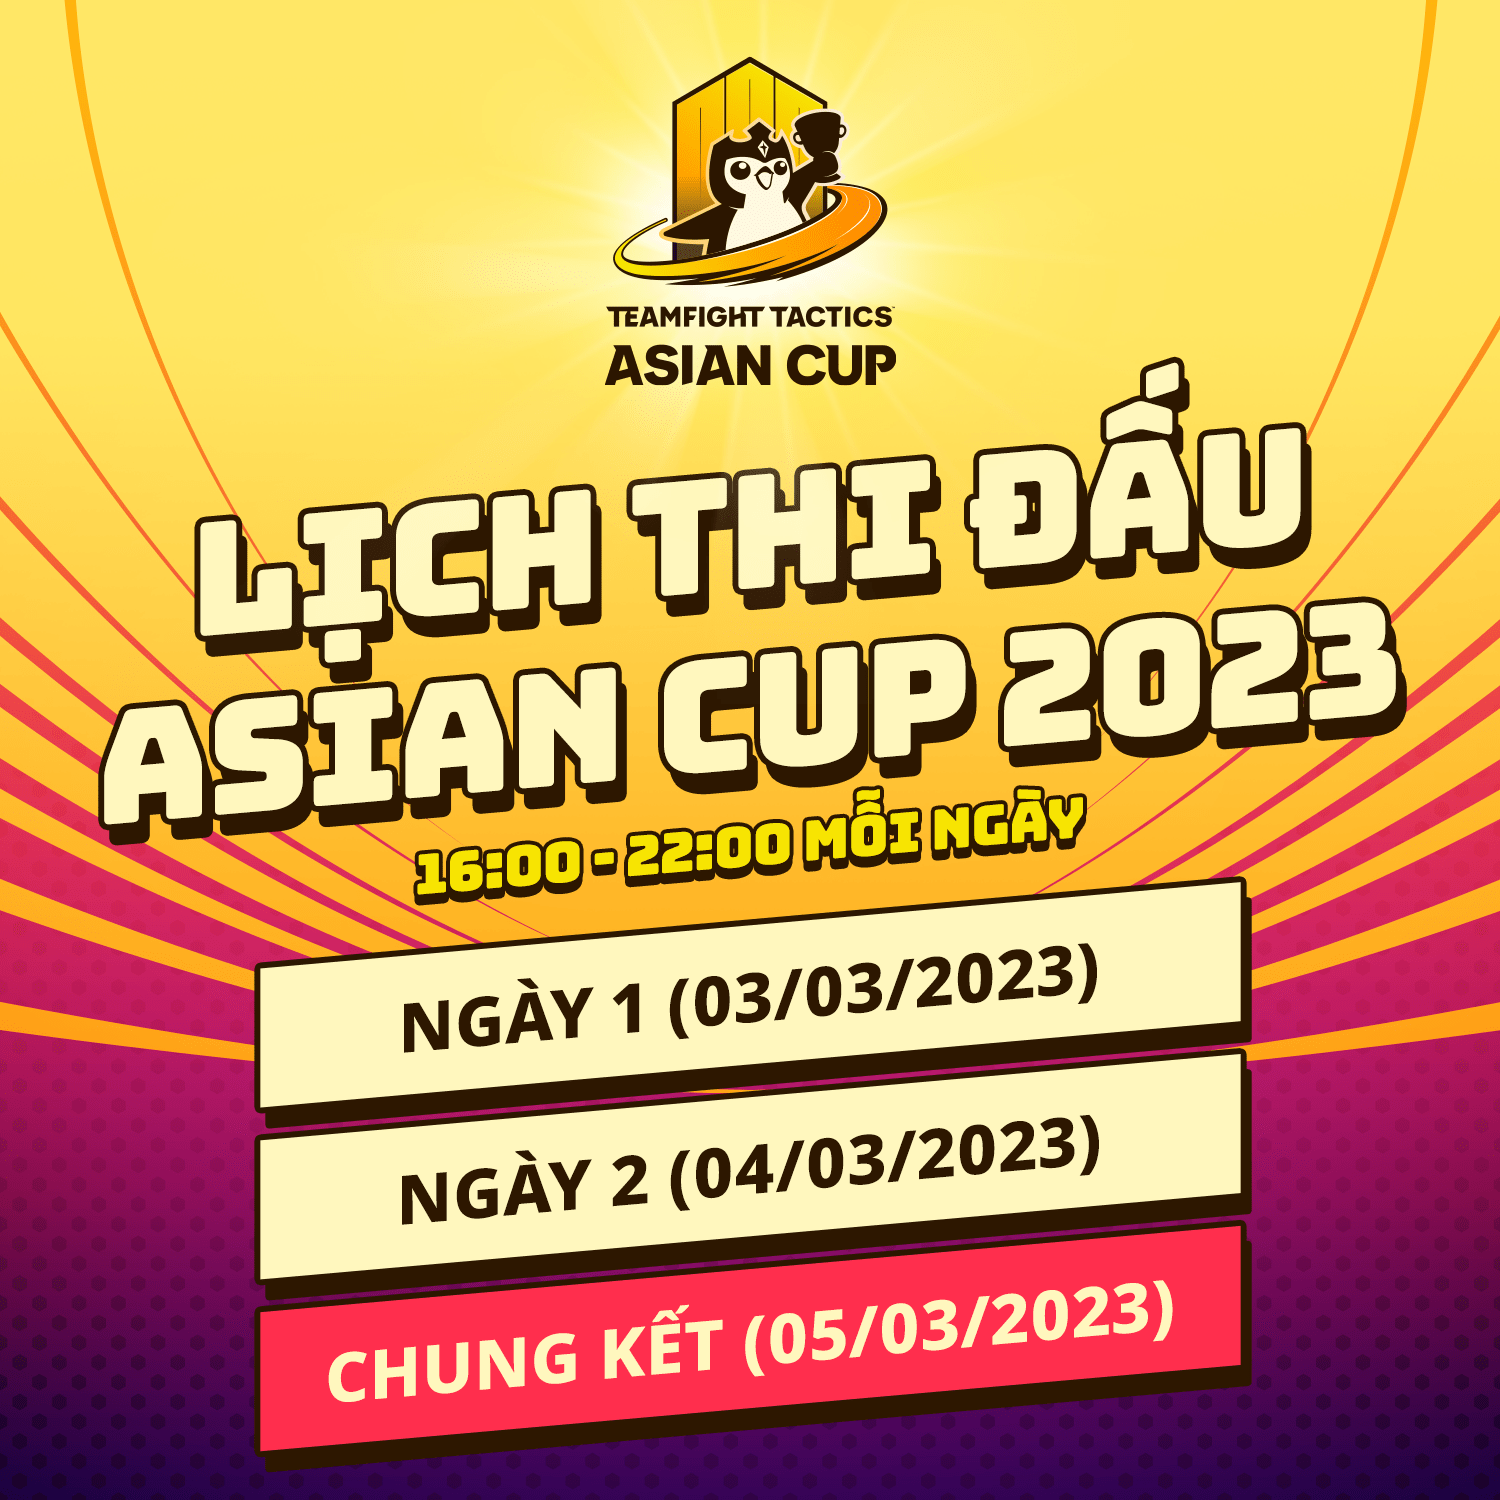 Giải đấu Asian Cup 2023 sẽ diễn ra từ 16h00 đến 22h00 trong các ngày 3-4-5/3/2023.